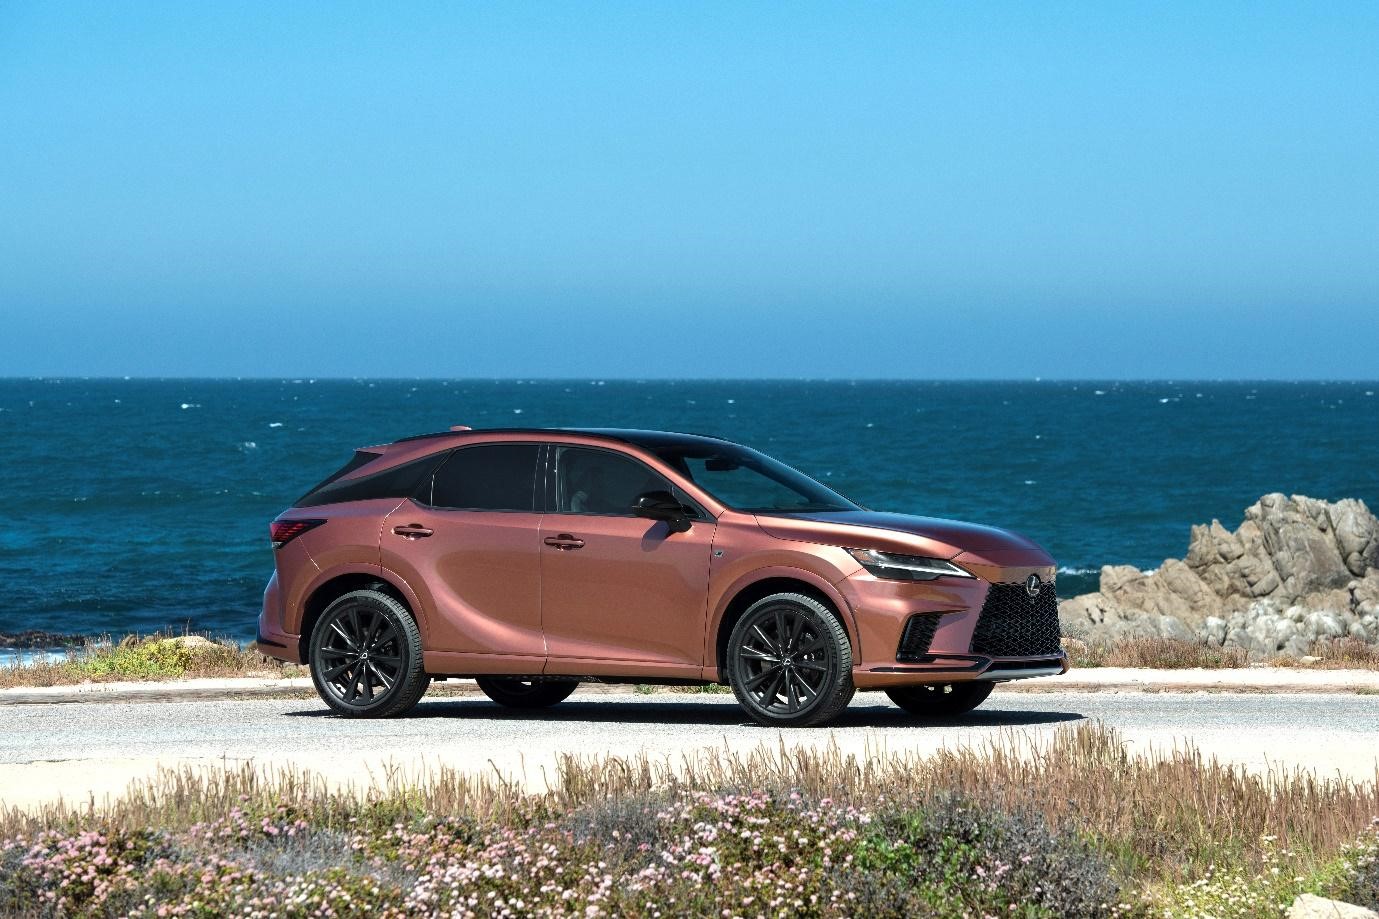 Lexus tiên phong về Hybrid - công nghệ thay thế hoàn hảo - 2